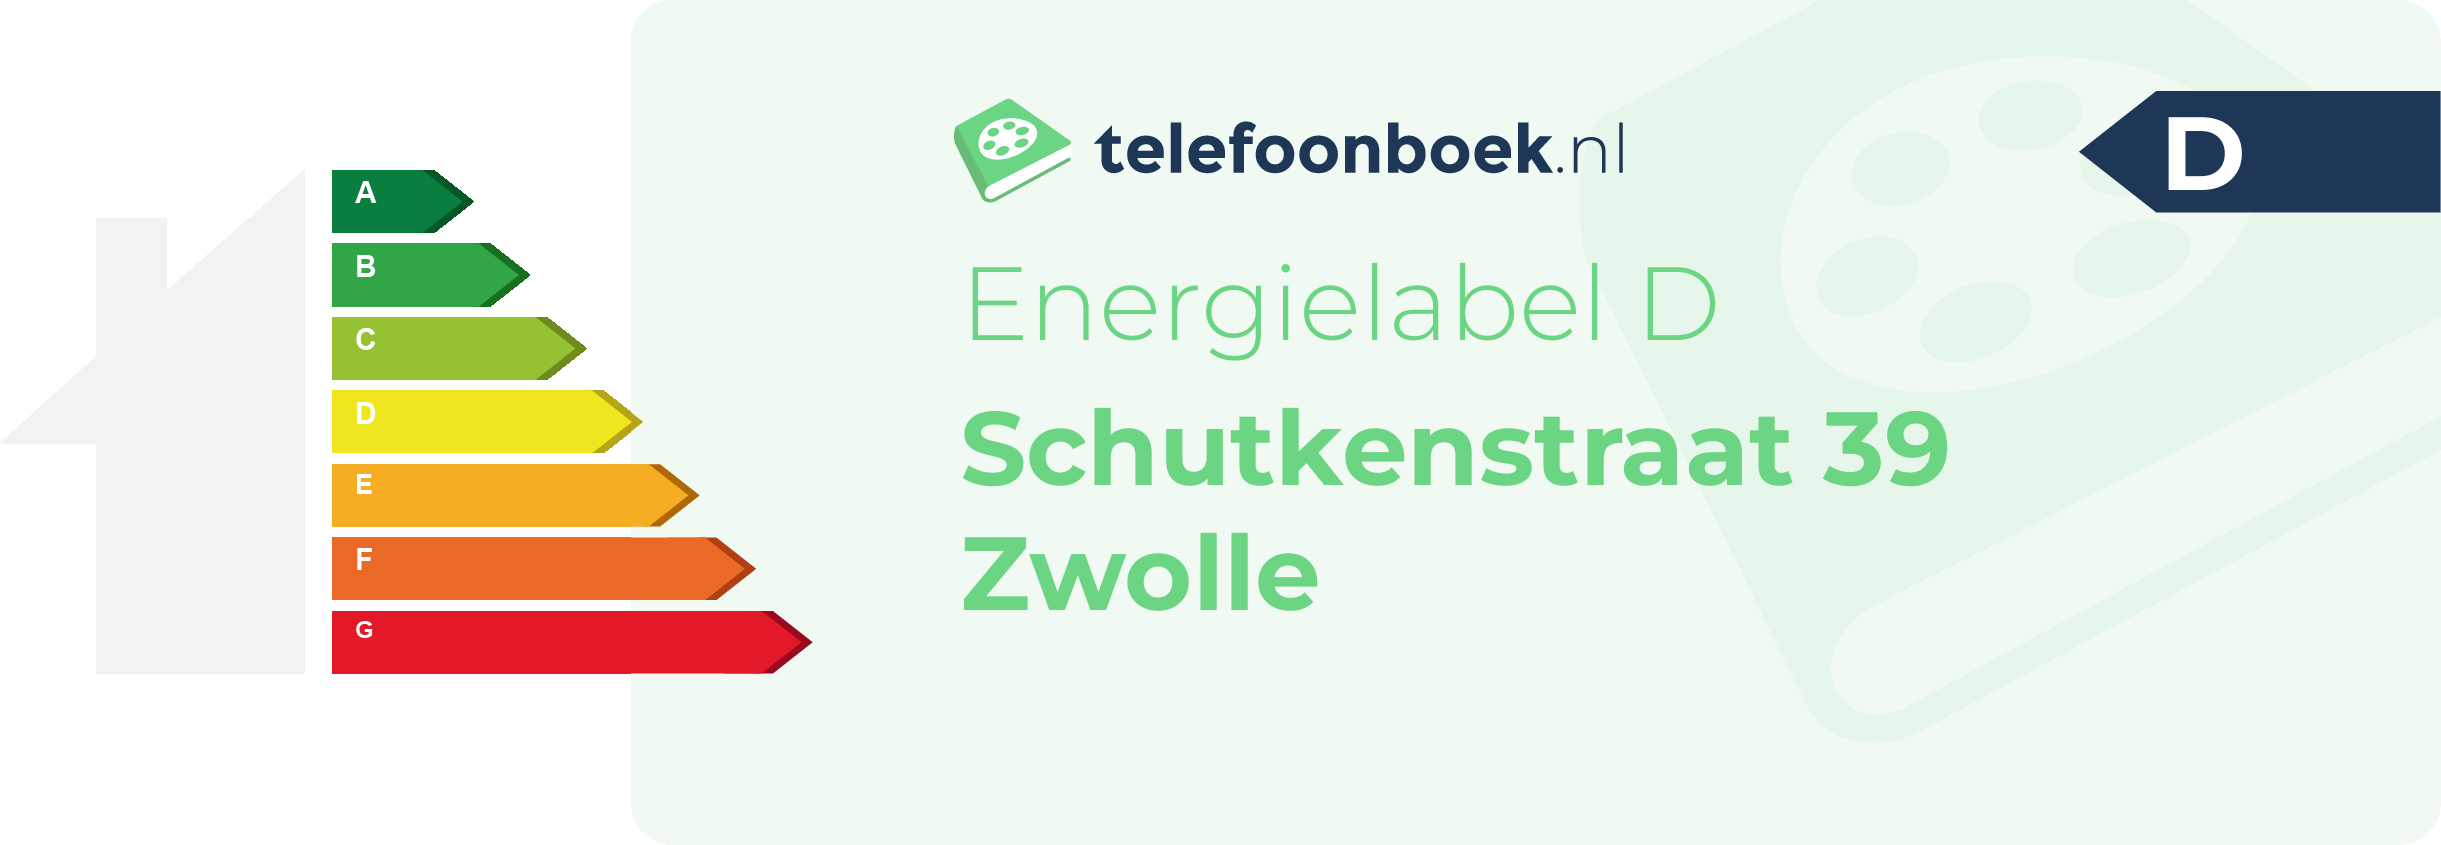 Energielabel Schutkenstraat 39 Zwolle